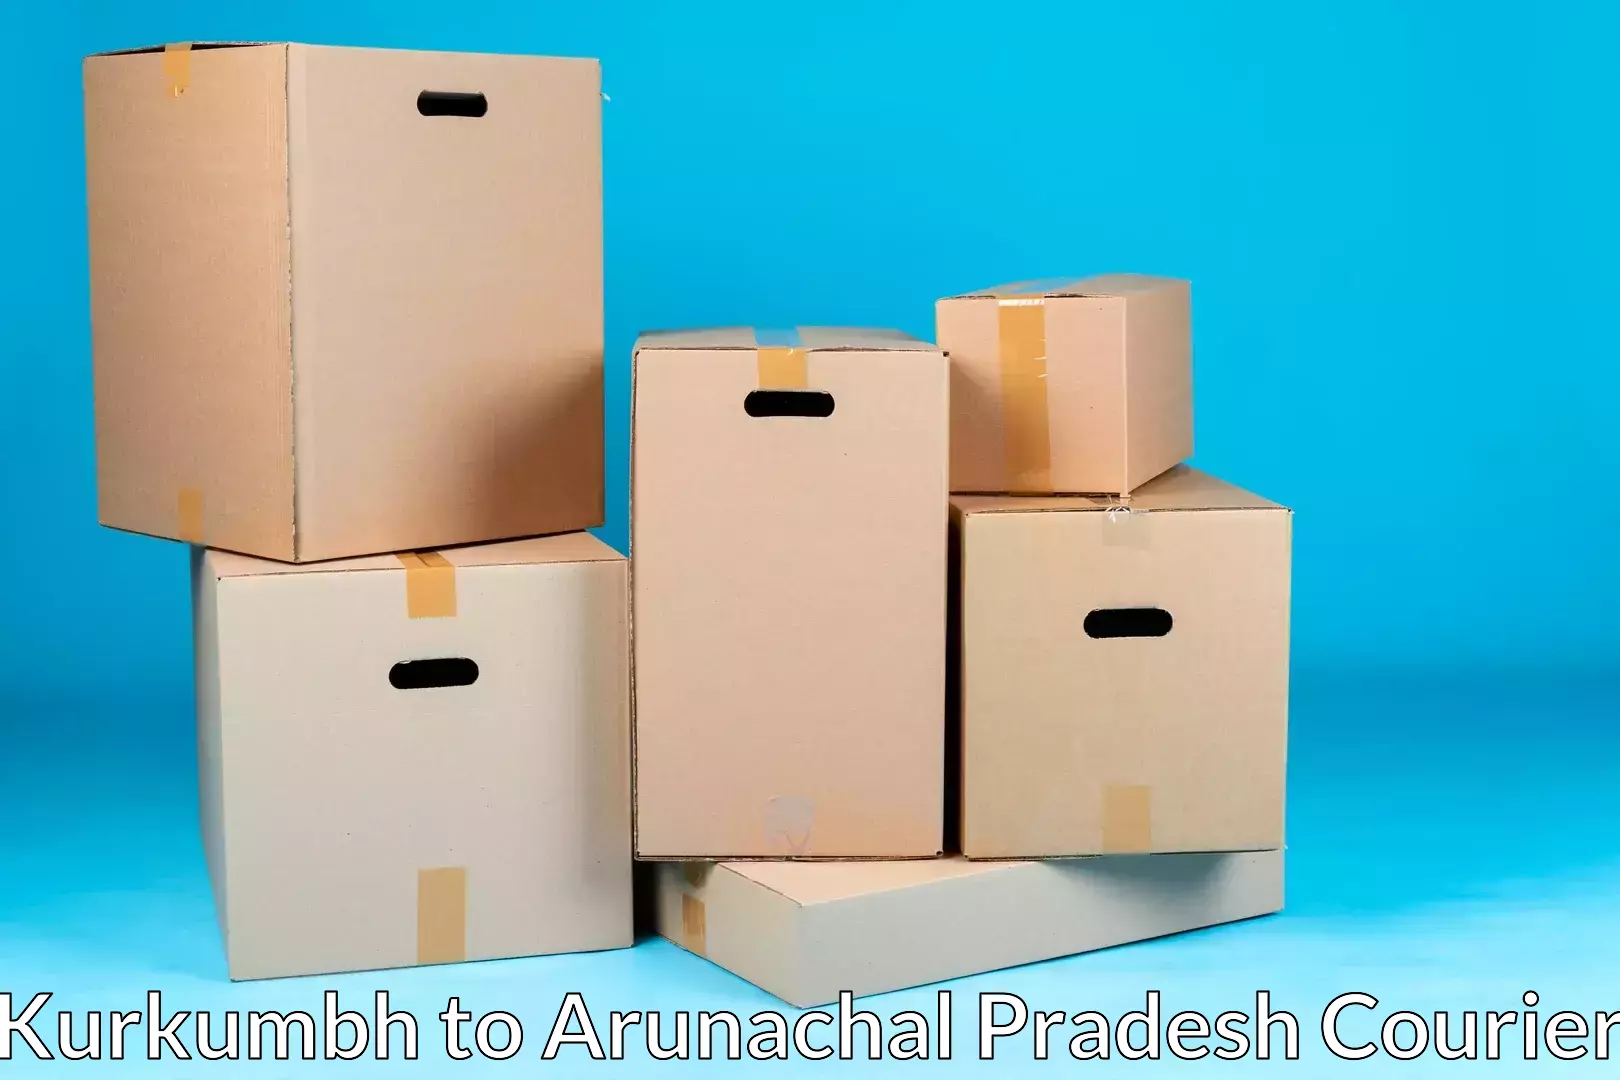 Efficient packing and moving Kurkumbh to Arunachal Pradesh